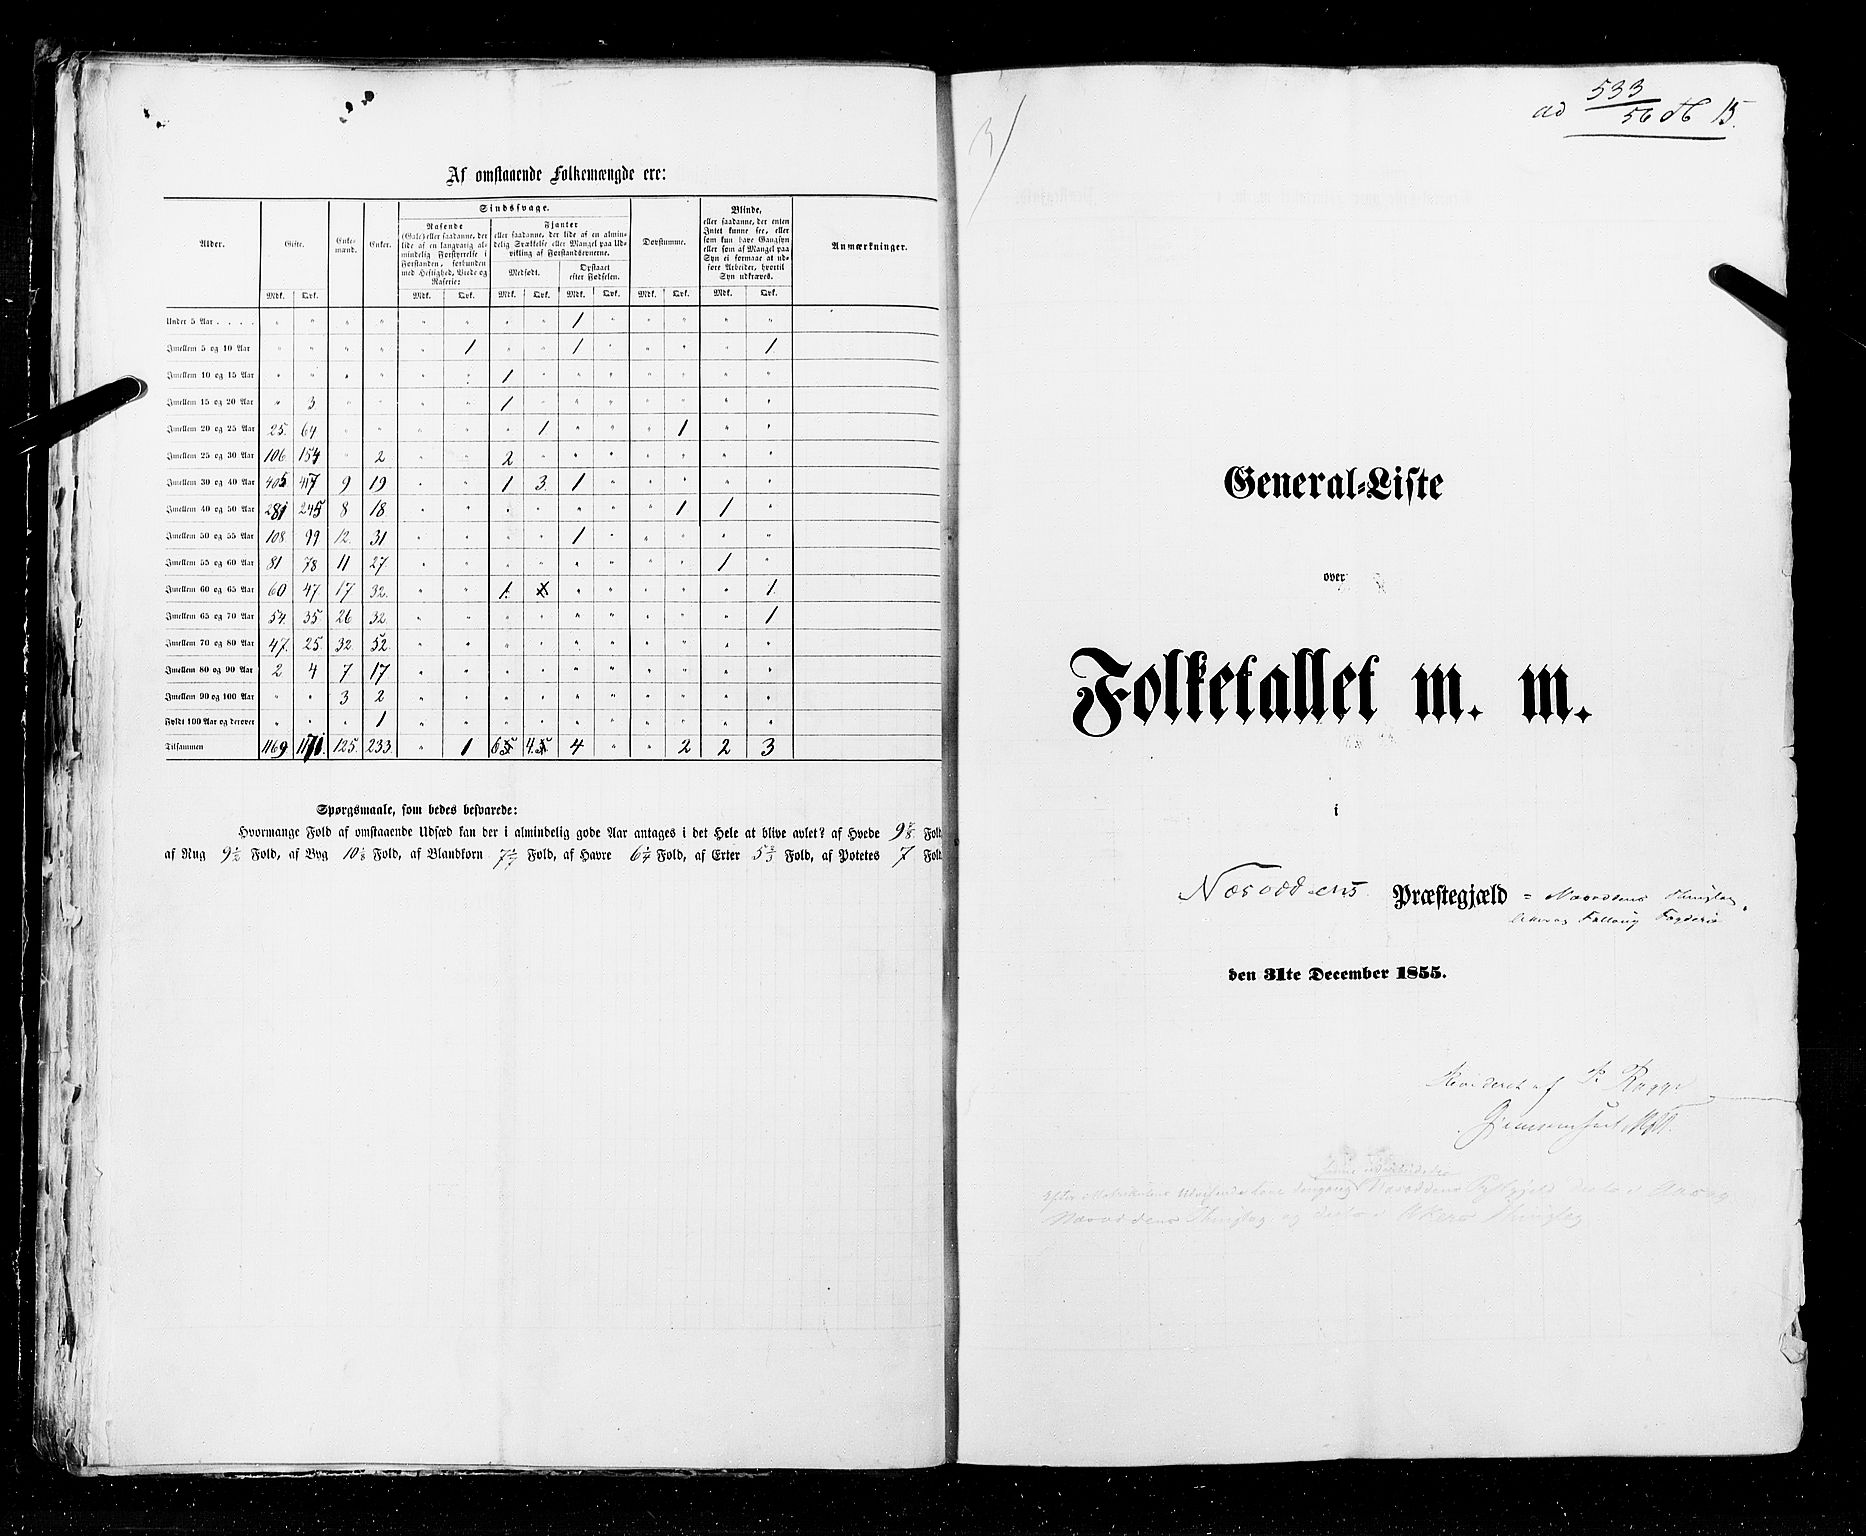 RA, Folketellingen 1855, bind 1: Akershus amt, Smålenenes amt og Hedemarken amt, 1855, s. 15